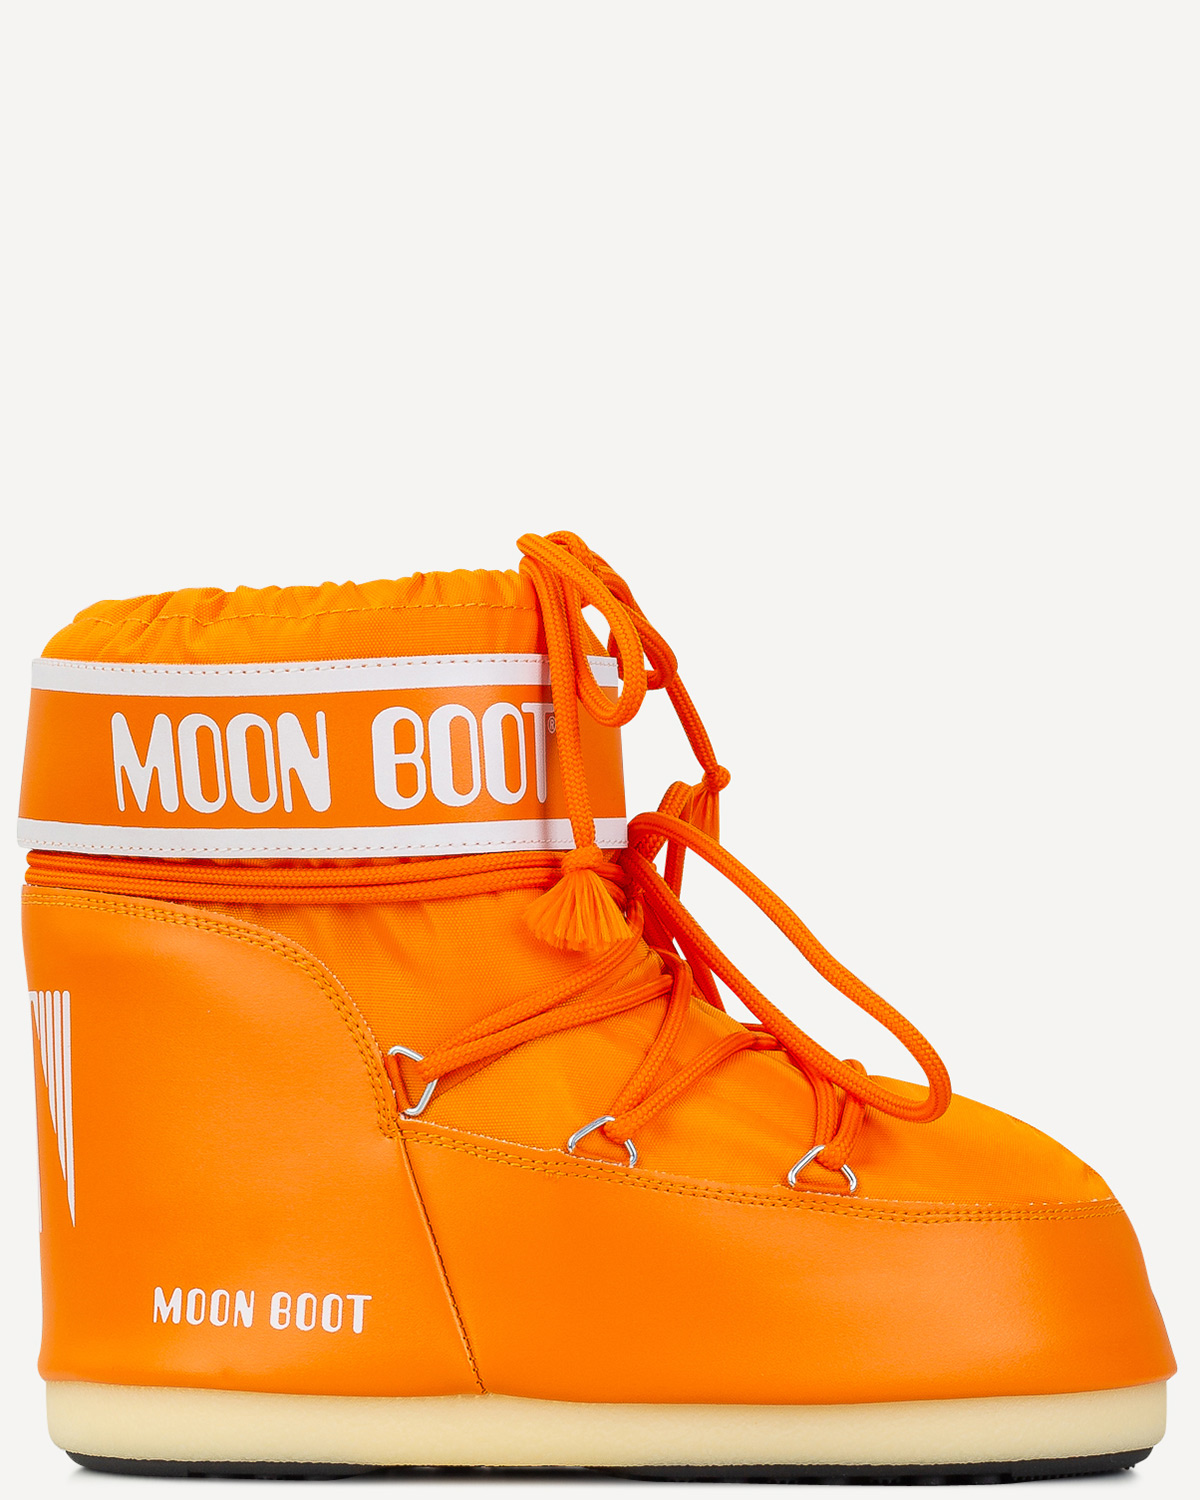 Γυναίκα - Μπότες - Μποτάκια - Moonboot Πορτοκαλί